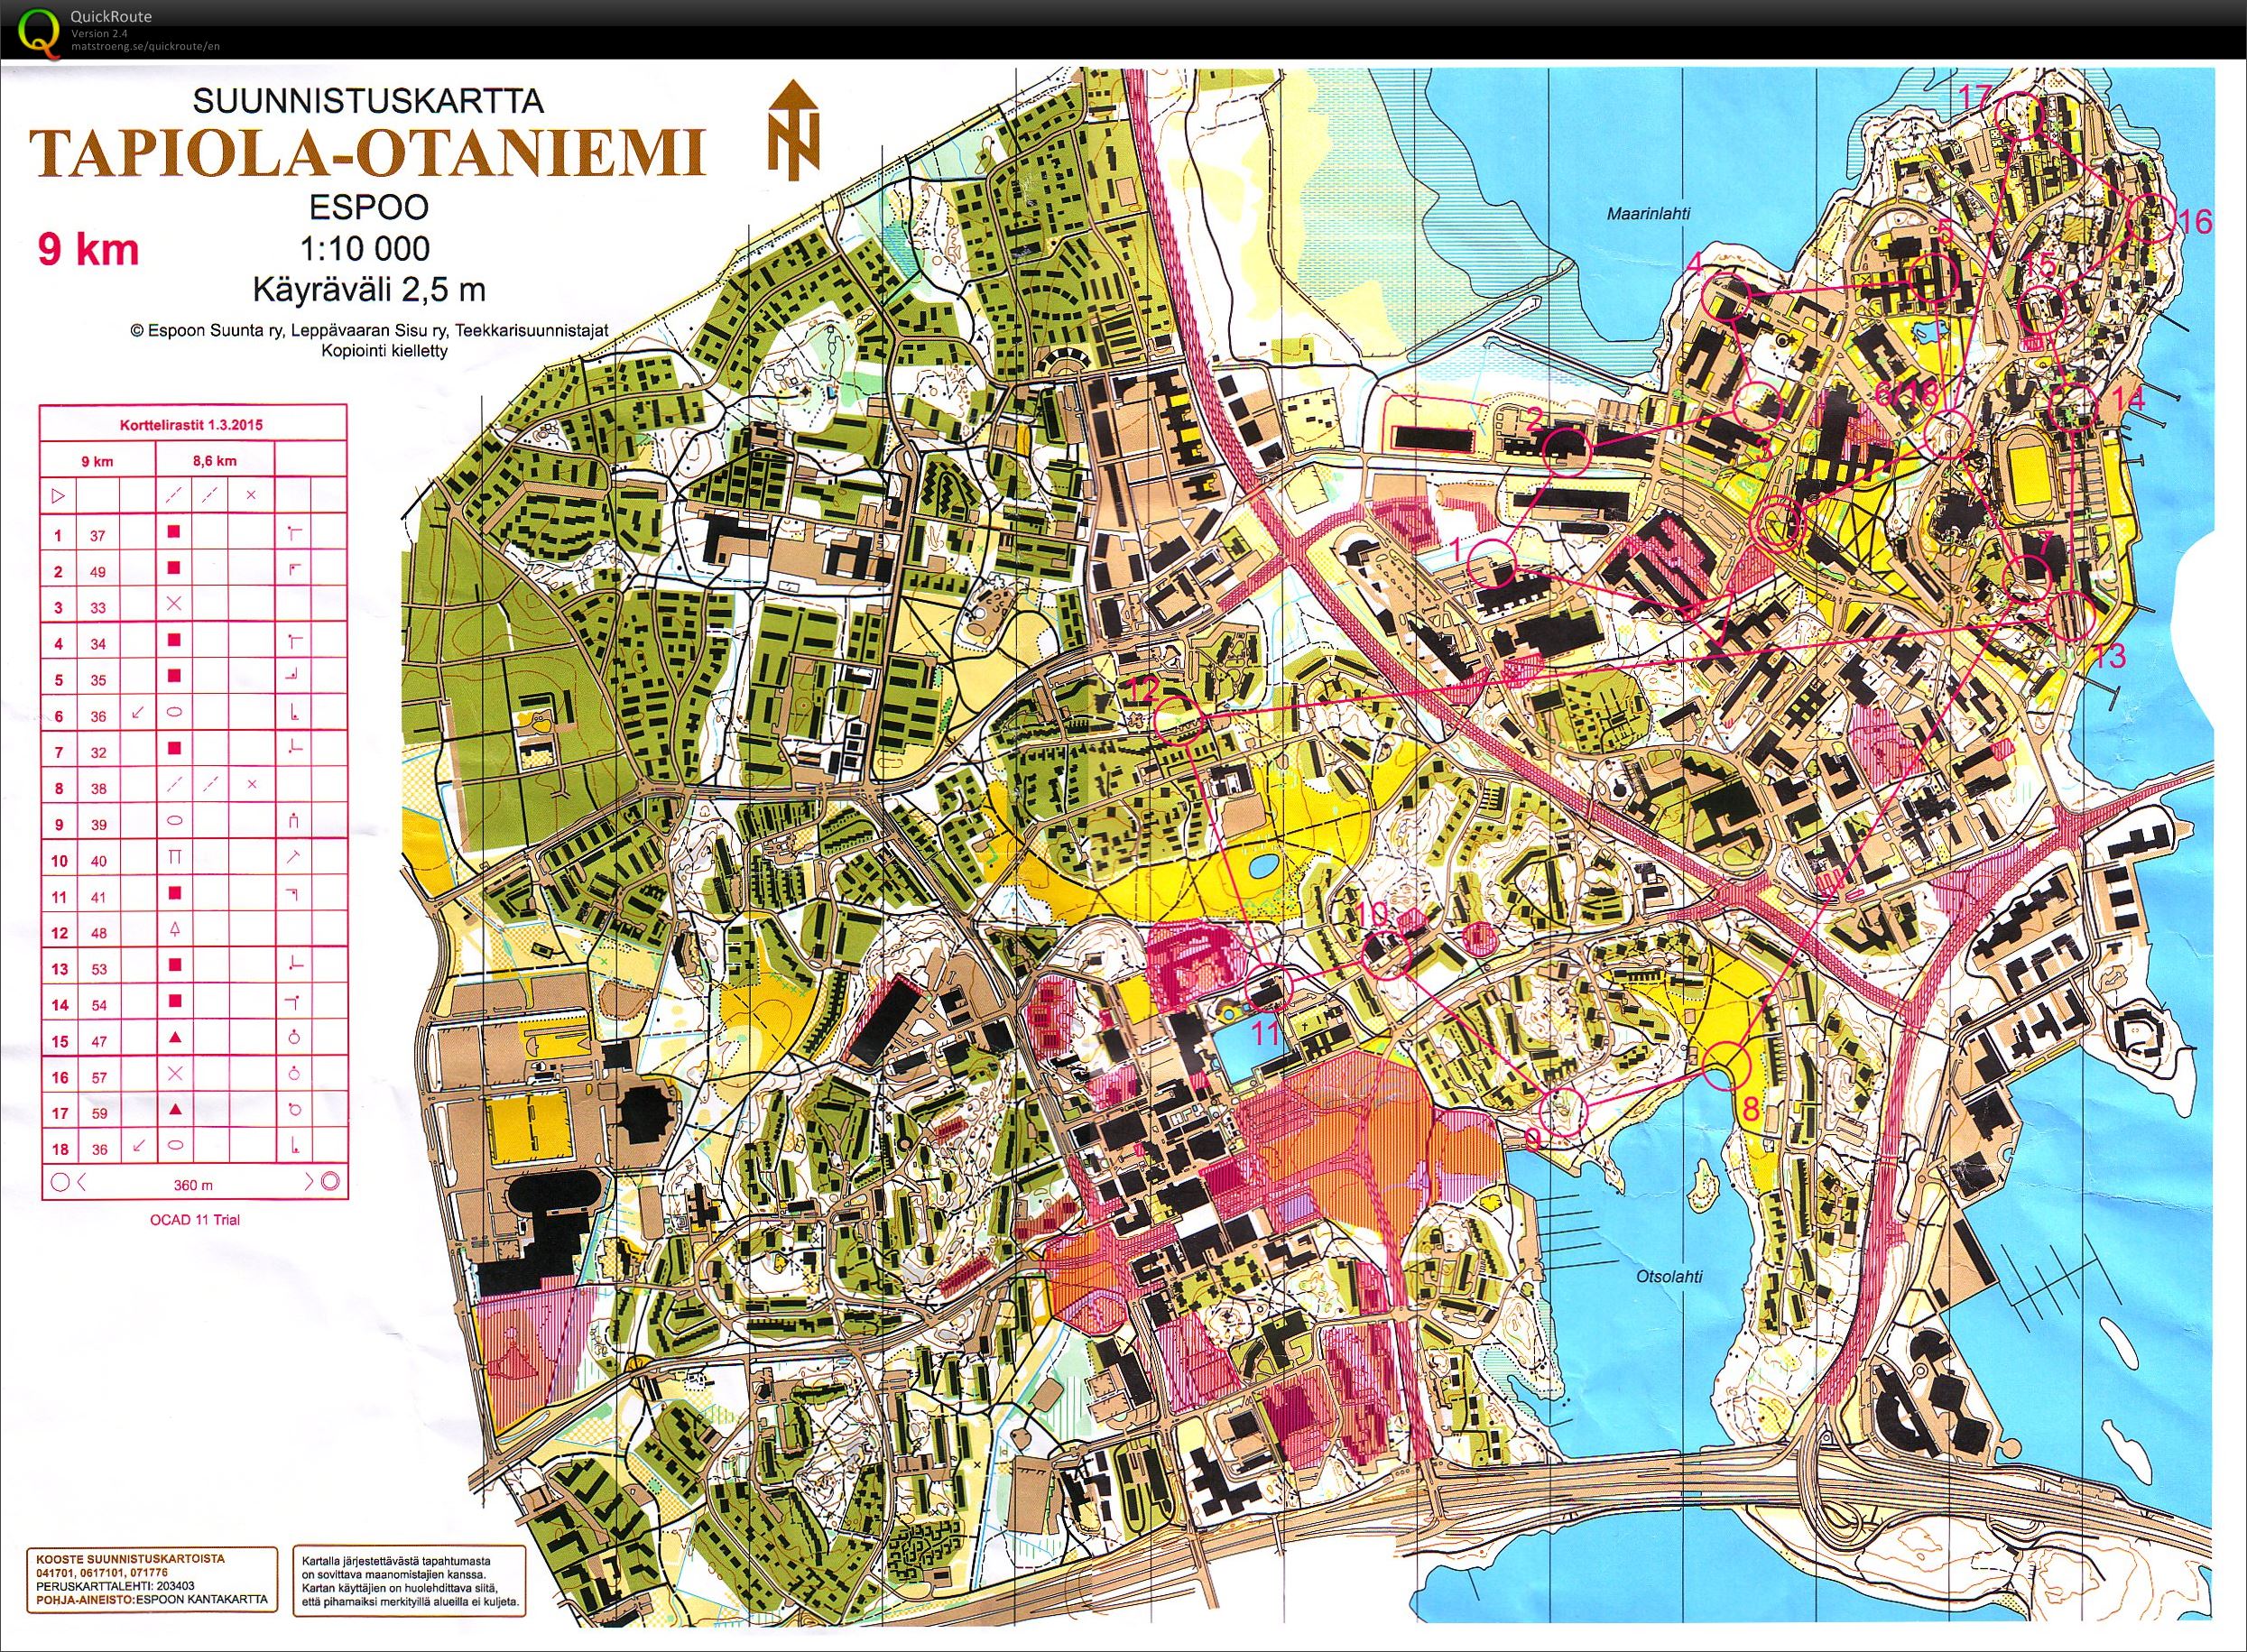 Pihkakortteli, Otaniemi - March 1st 2015 - Orienteering Map from Olli Ranta